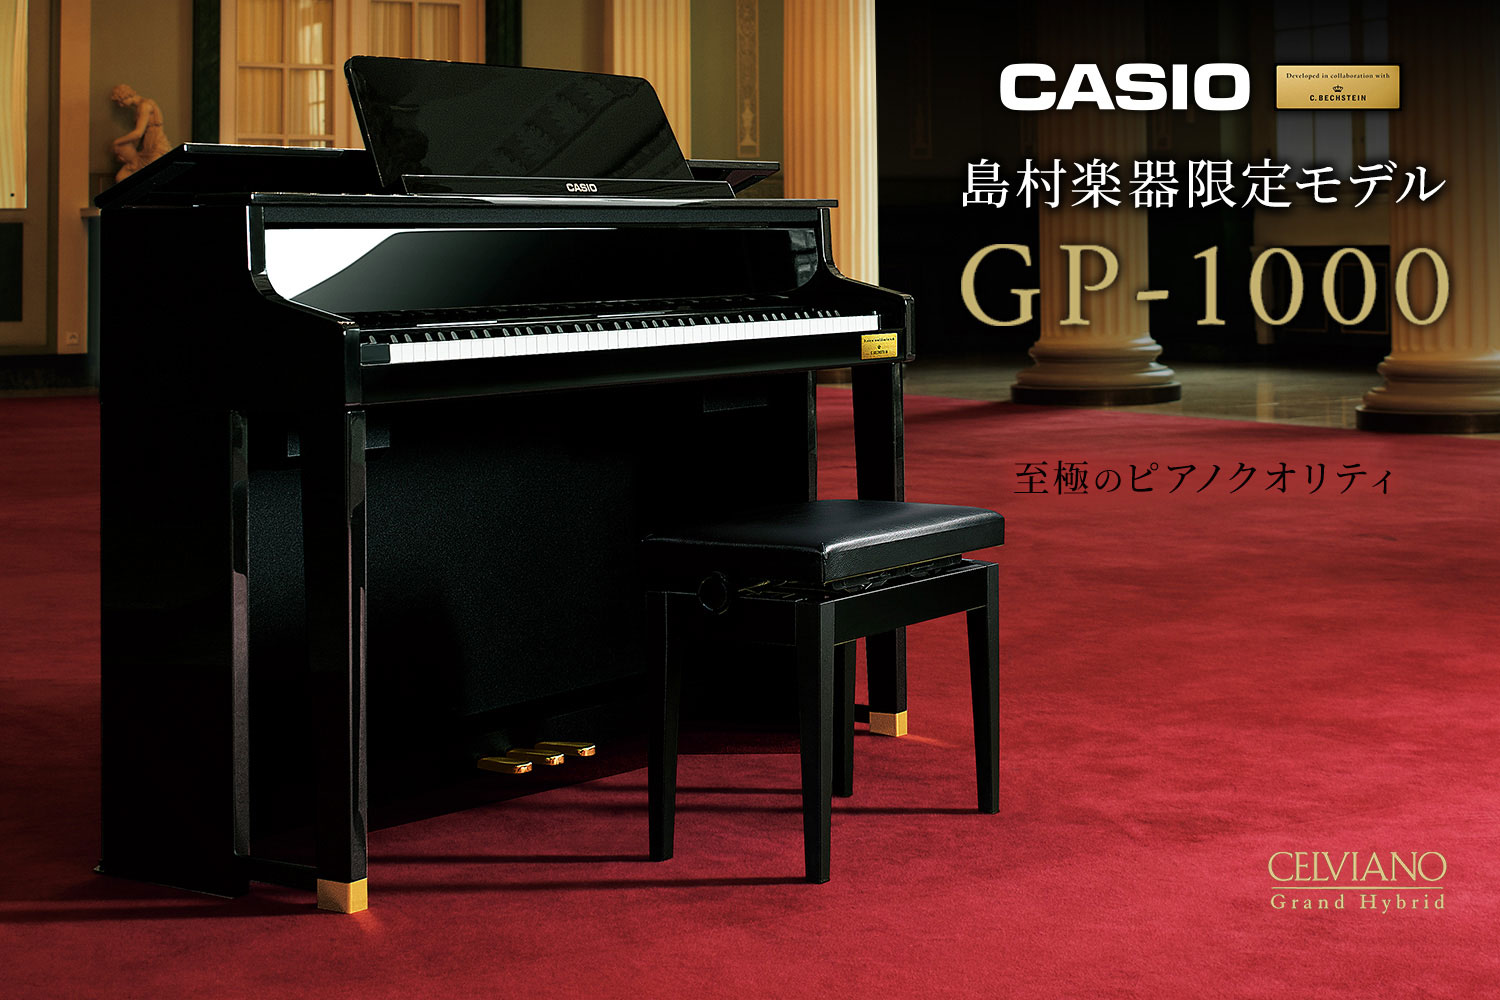 *店頭にてお試しいただけます！ 日本語パネルやハンマーアクションも実際にご覧いただけます。 *グランドピアノに徹底的にこだわった至極のクオリティ ピアノ作りの伝統を徹底的に研究、そしてカシオの革新的なデジタル技術を投入した、カシオセルヴィアーノグランドハイブリッドシリーズ。世界有数の歴史あるピアノメ […]